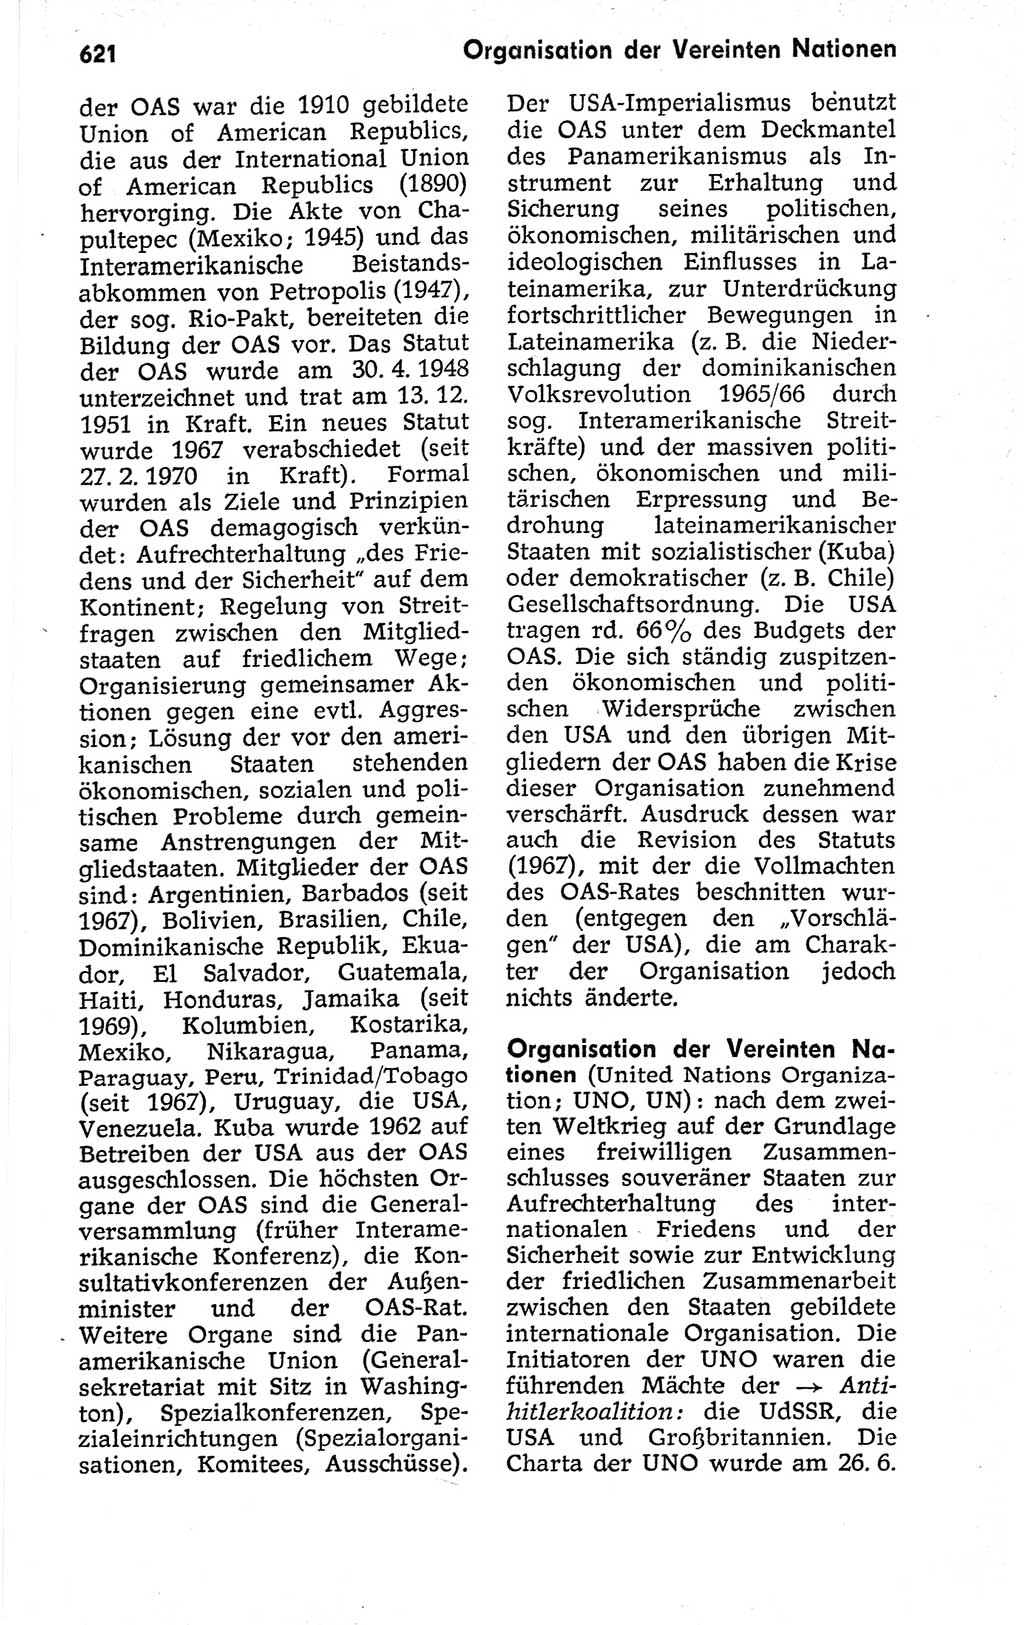 Kleines politisches Wörterbuch [Deutsche Demokratische Republik (DDR)] 1973, Seite 621 (Kl. pol. Wb. DDR 1973, S. 621)